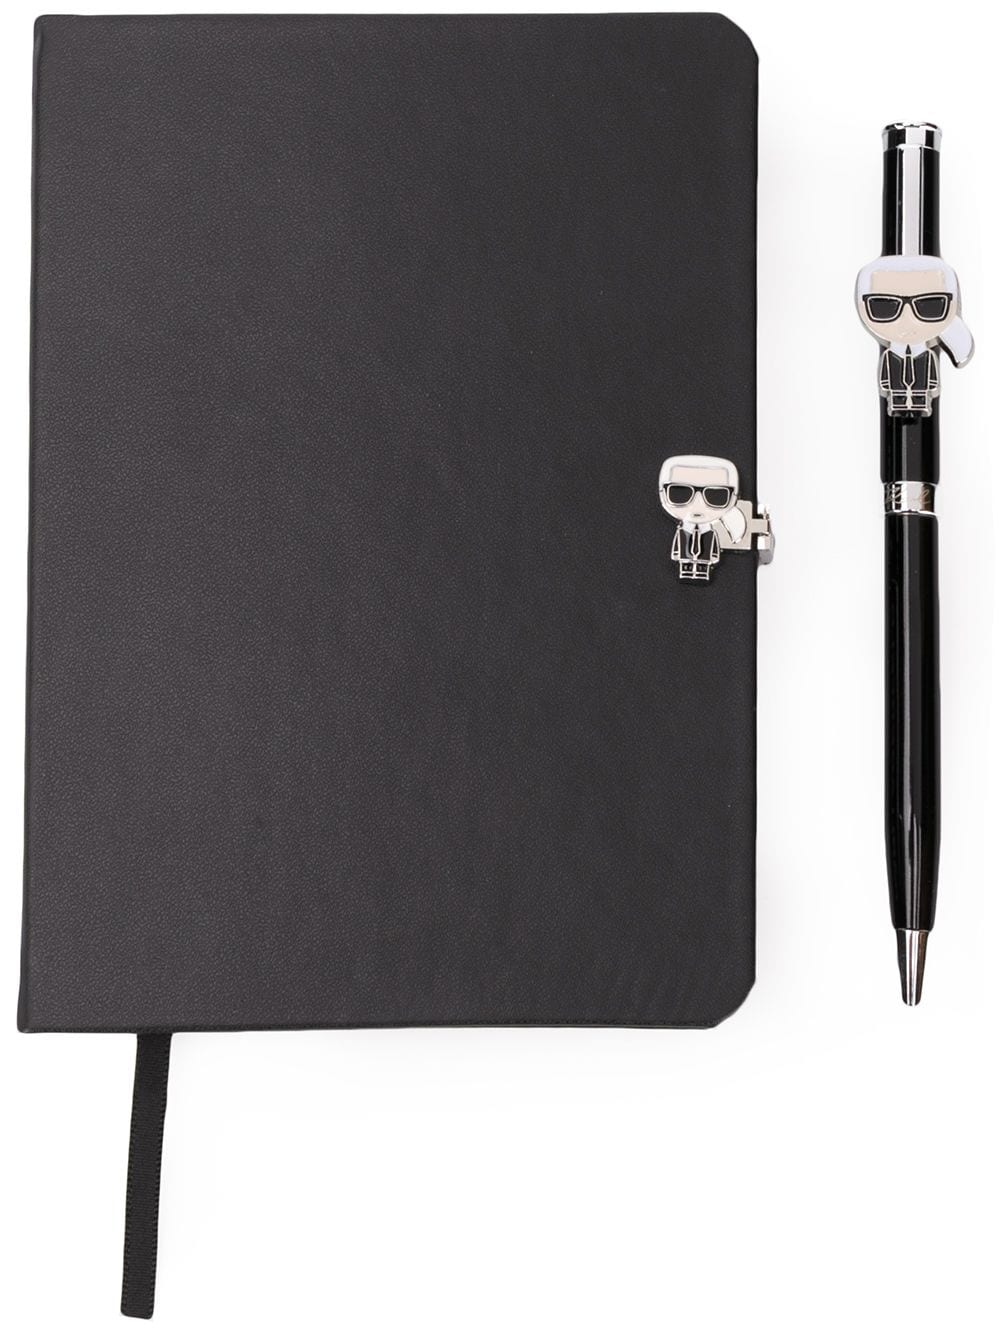 Записная книга с ручкой KIkonik Karl Lagerfeld 7nbsp421 руб.